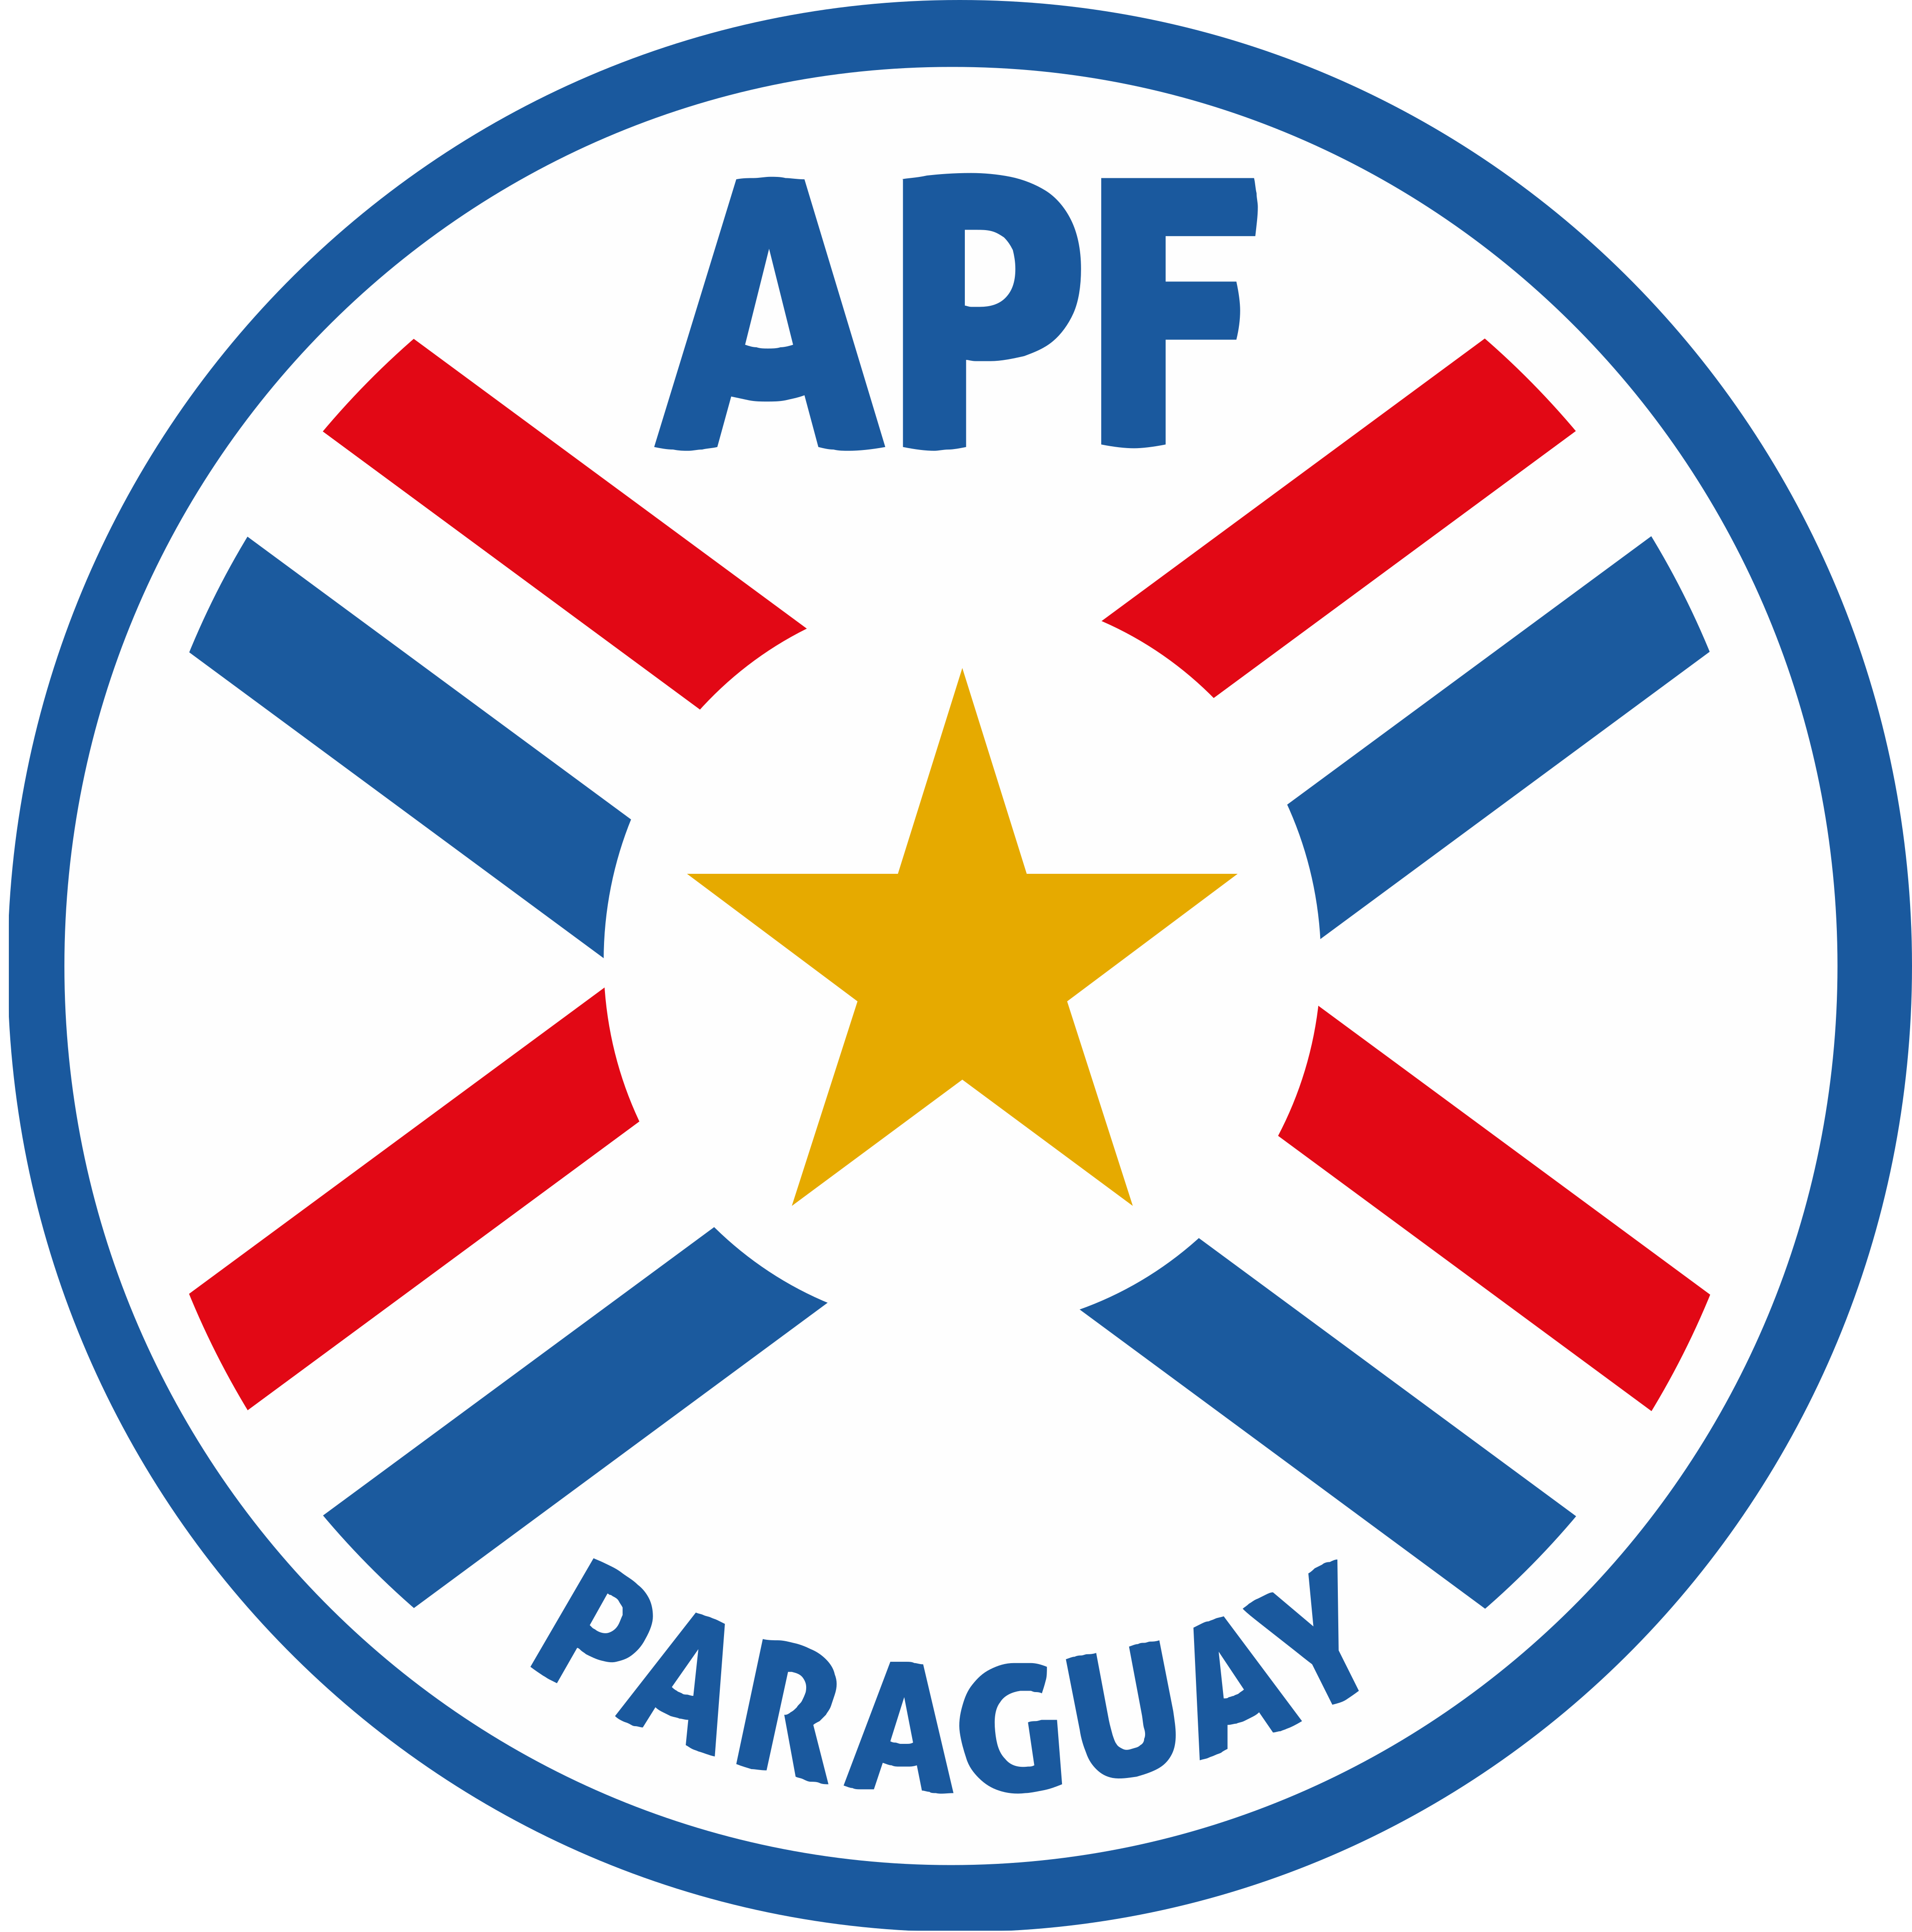 apf seleccion de futbol de paraguay logo - APF Logo - Paraguay National Football Team Logo